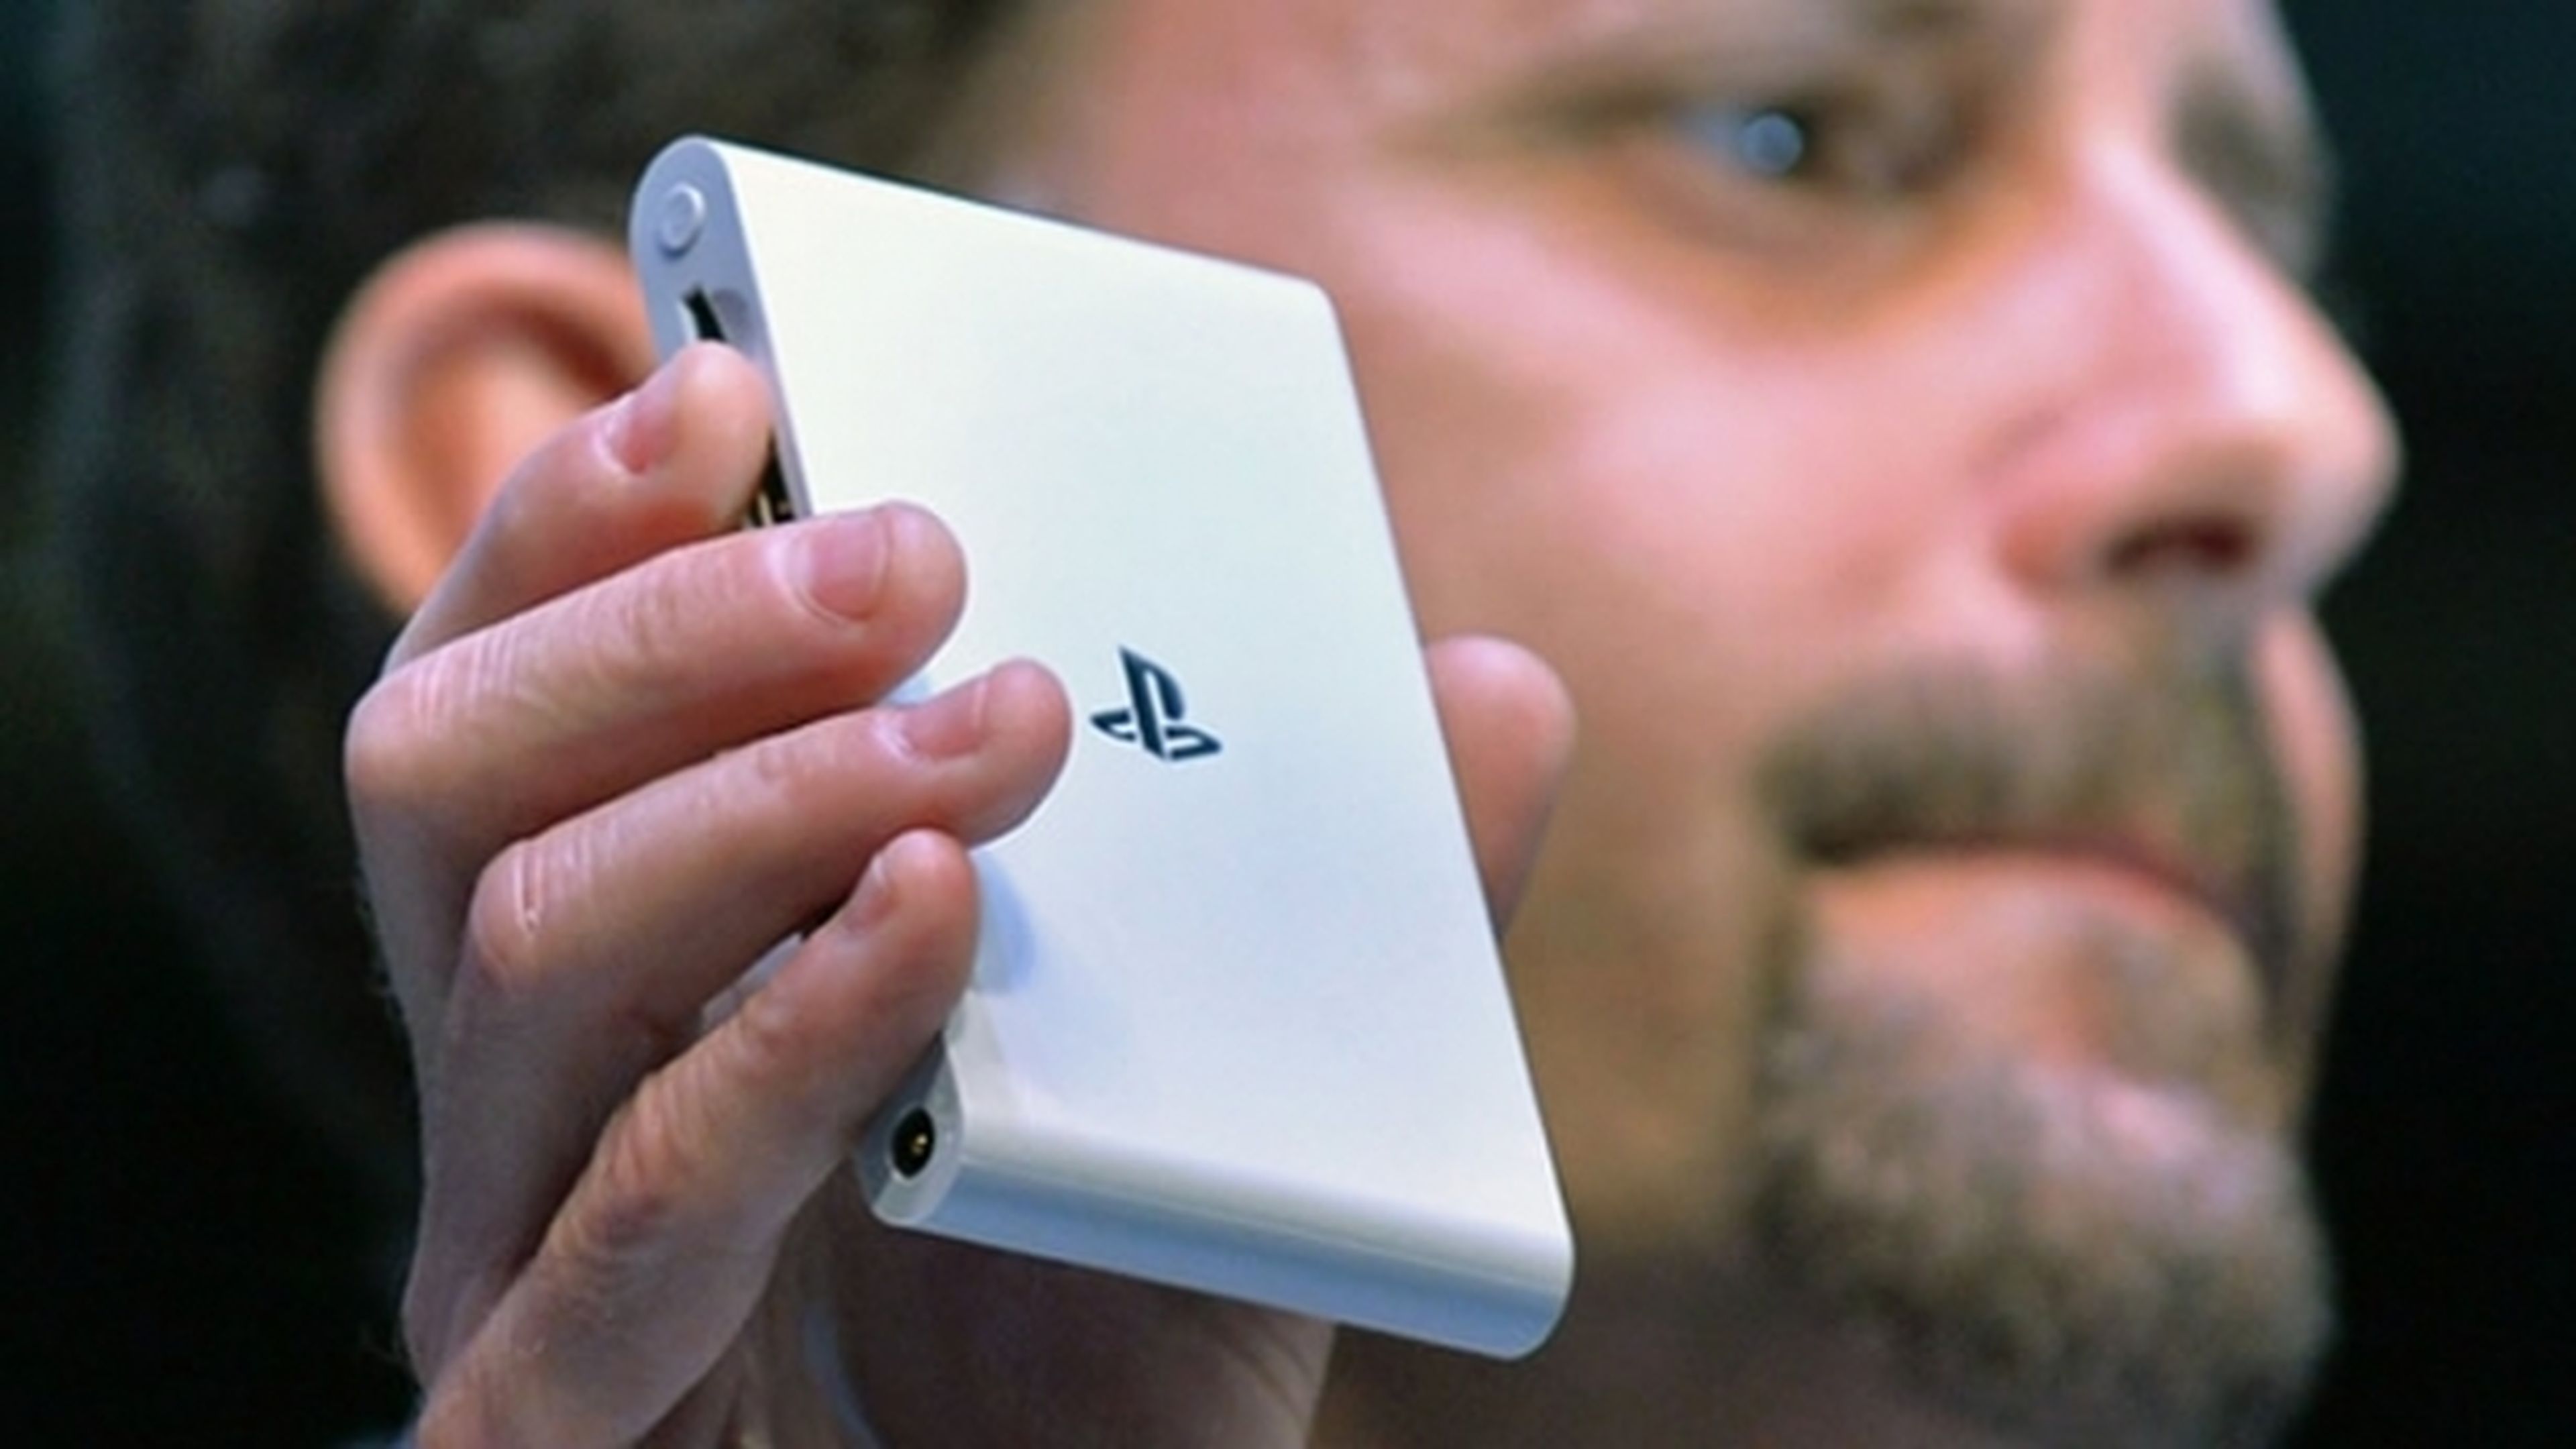 PS Vita TV llegará a Europa con un nuevo enfoque